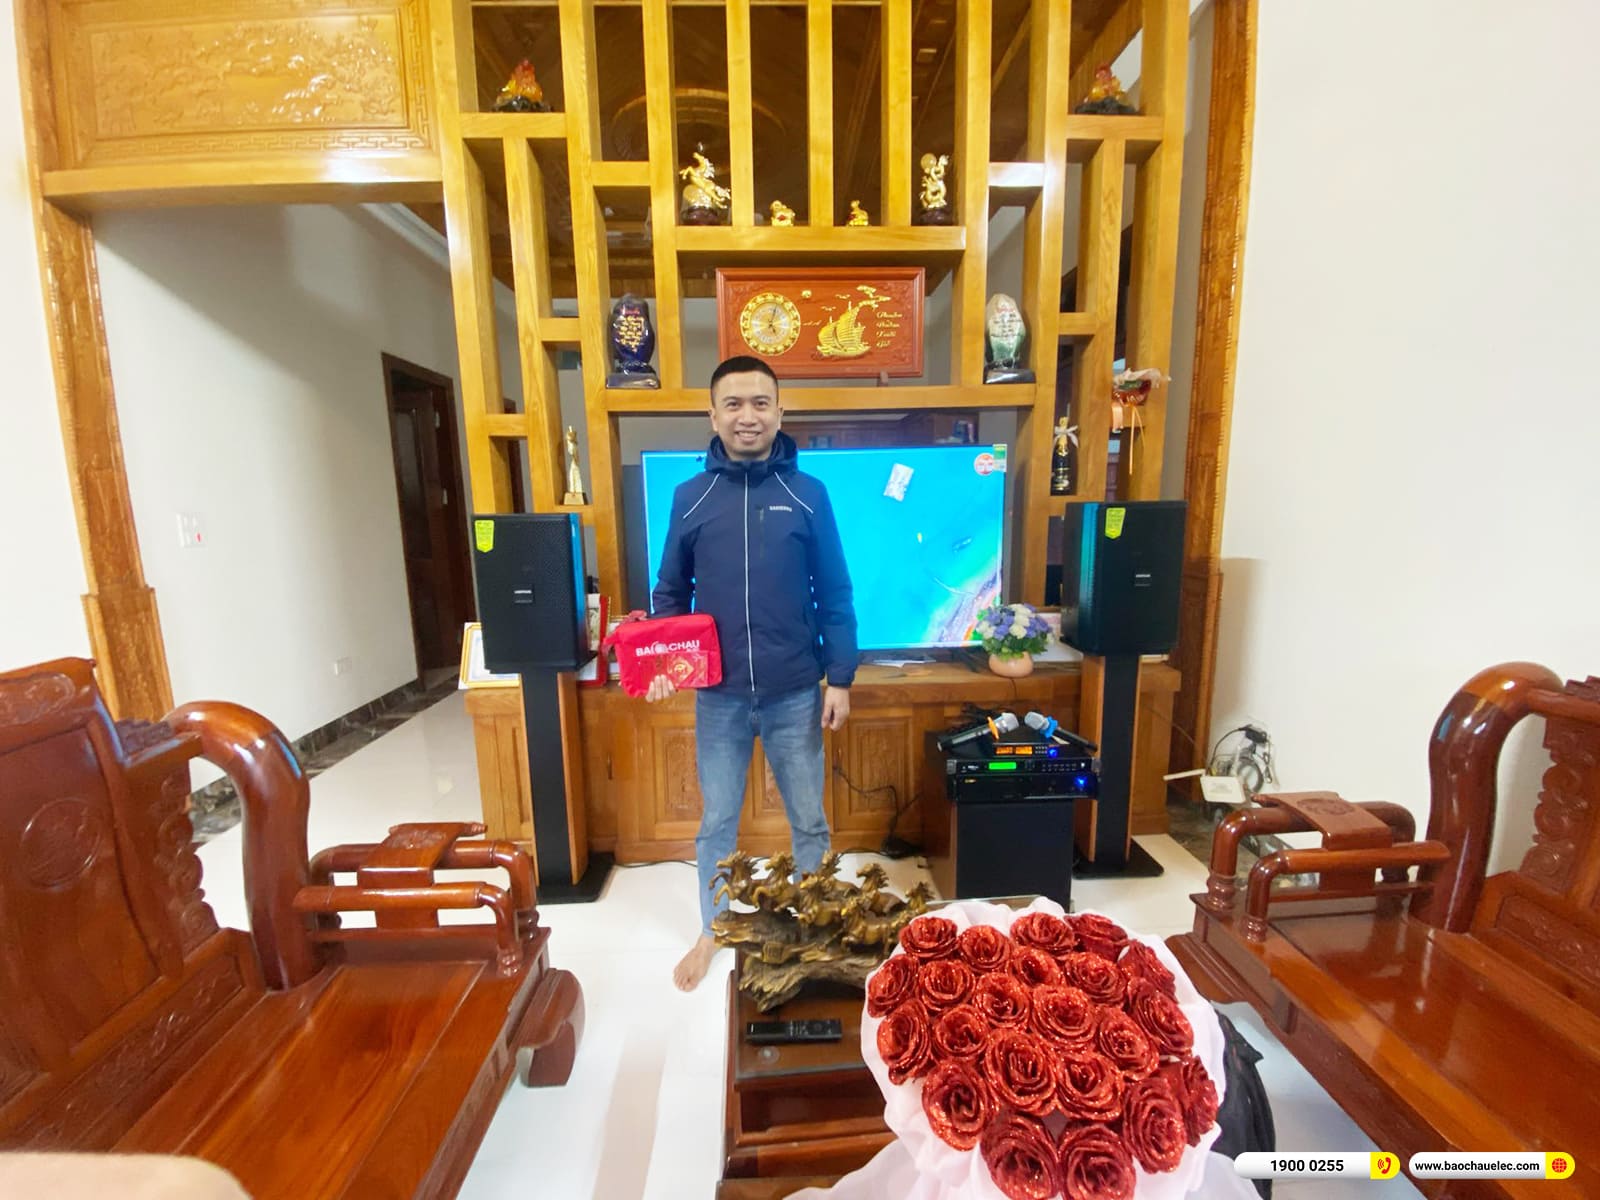 Lắp đặt dàn karaoke Domus gần 30tr cho anh Nam ở Thanh Hóa